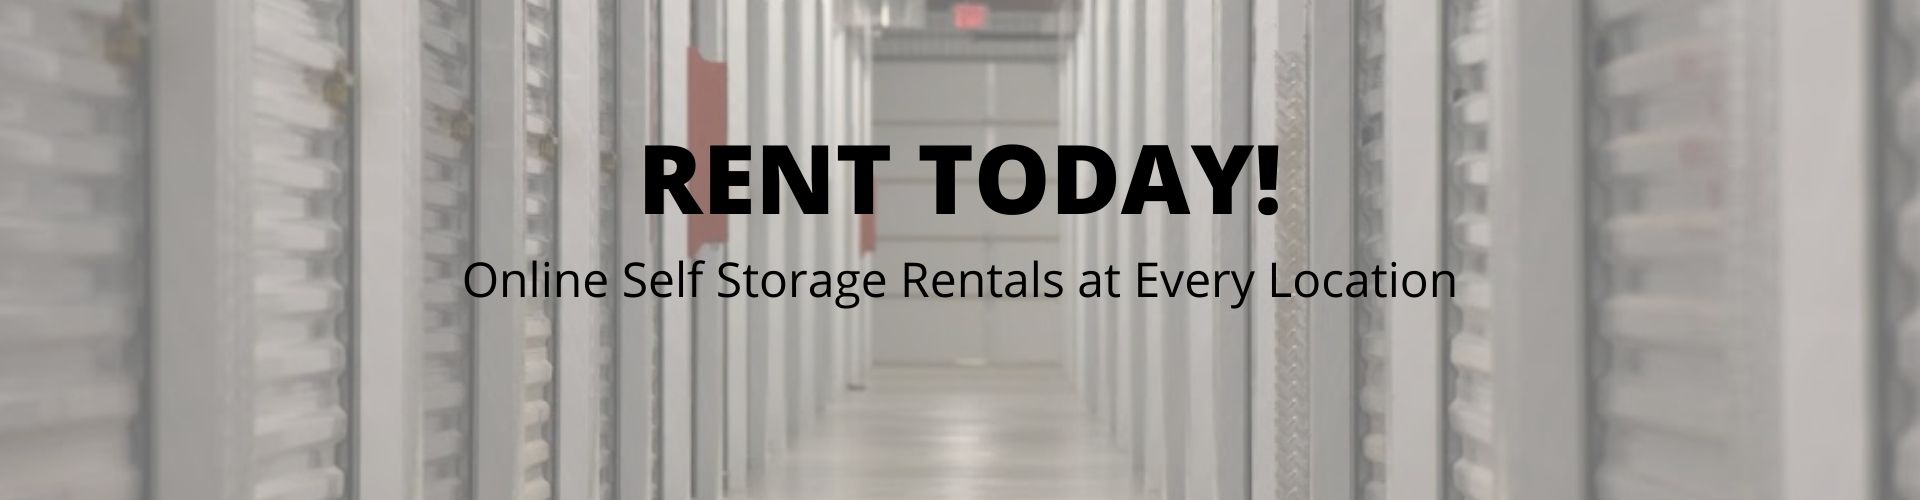 online storage rentals at Bowman Plains Self Storage